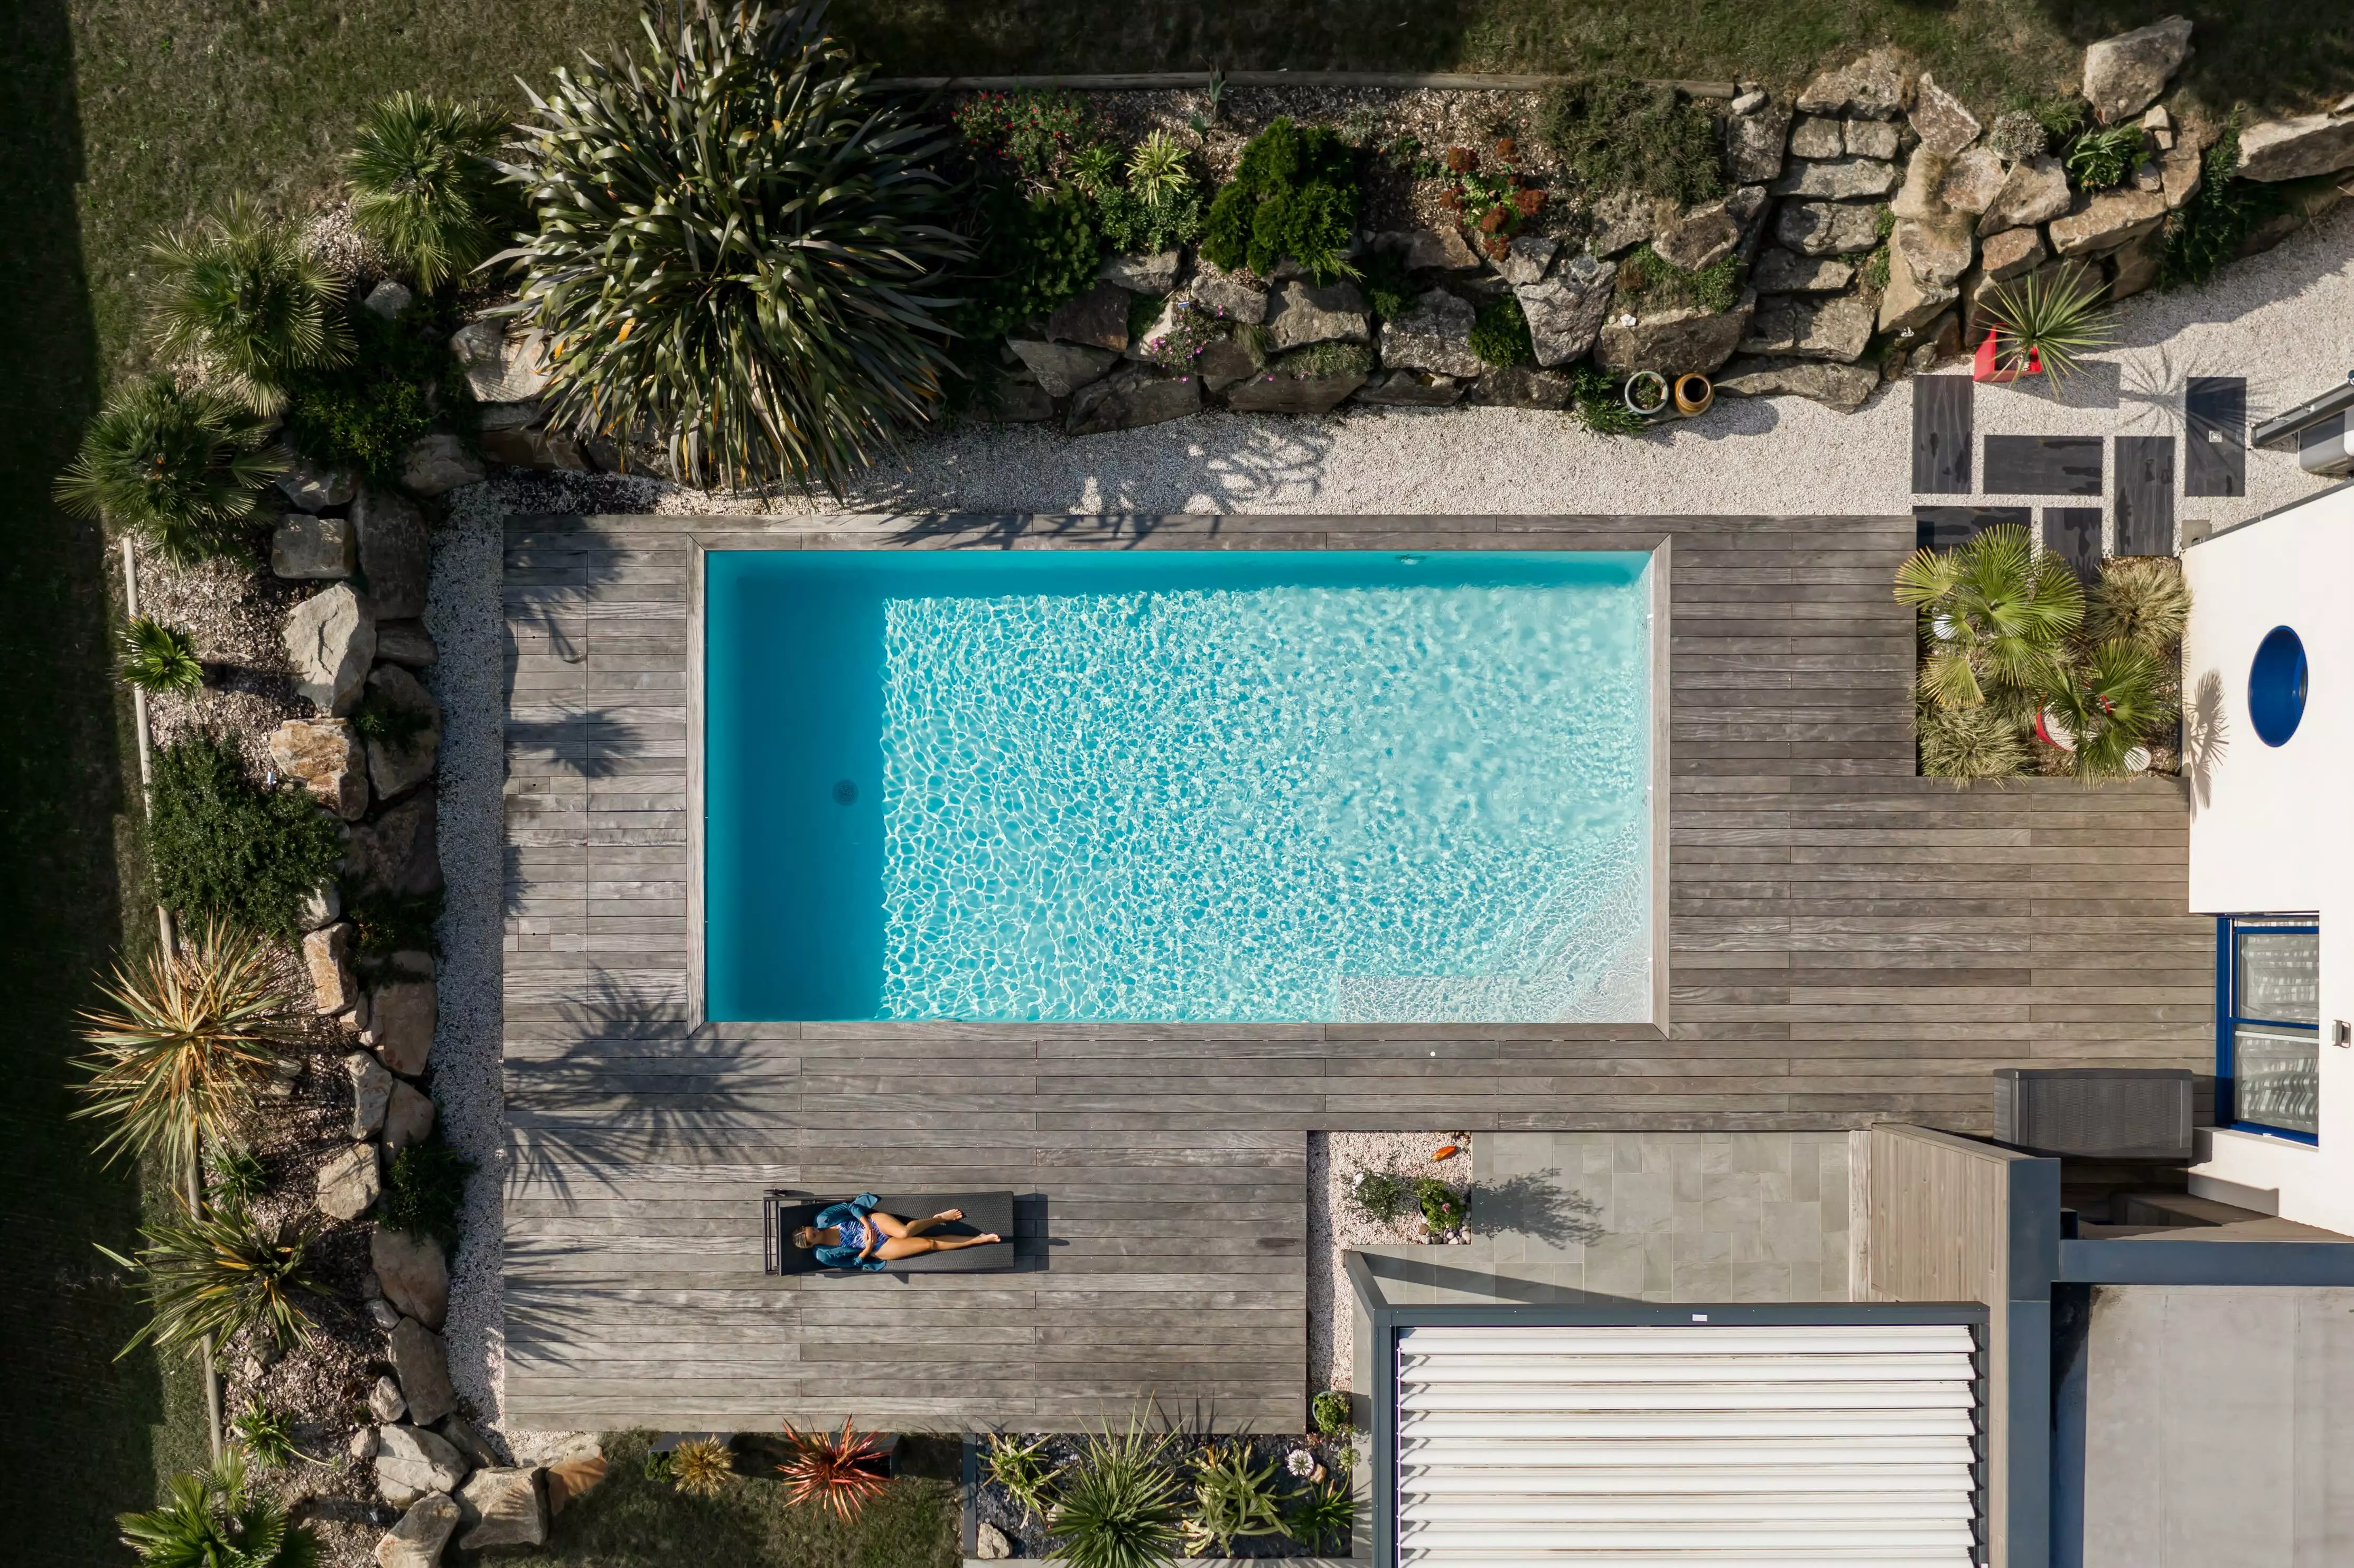 Une demeure contemporaine avec la piscine comme pièce maîtresse, unie à un jardin rocheux via une terrasse et agrémentée de végétation exotique.